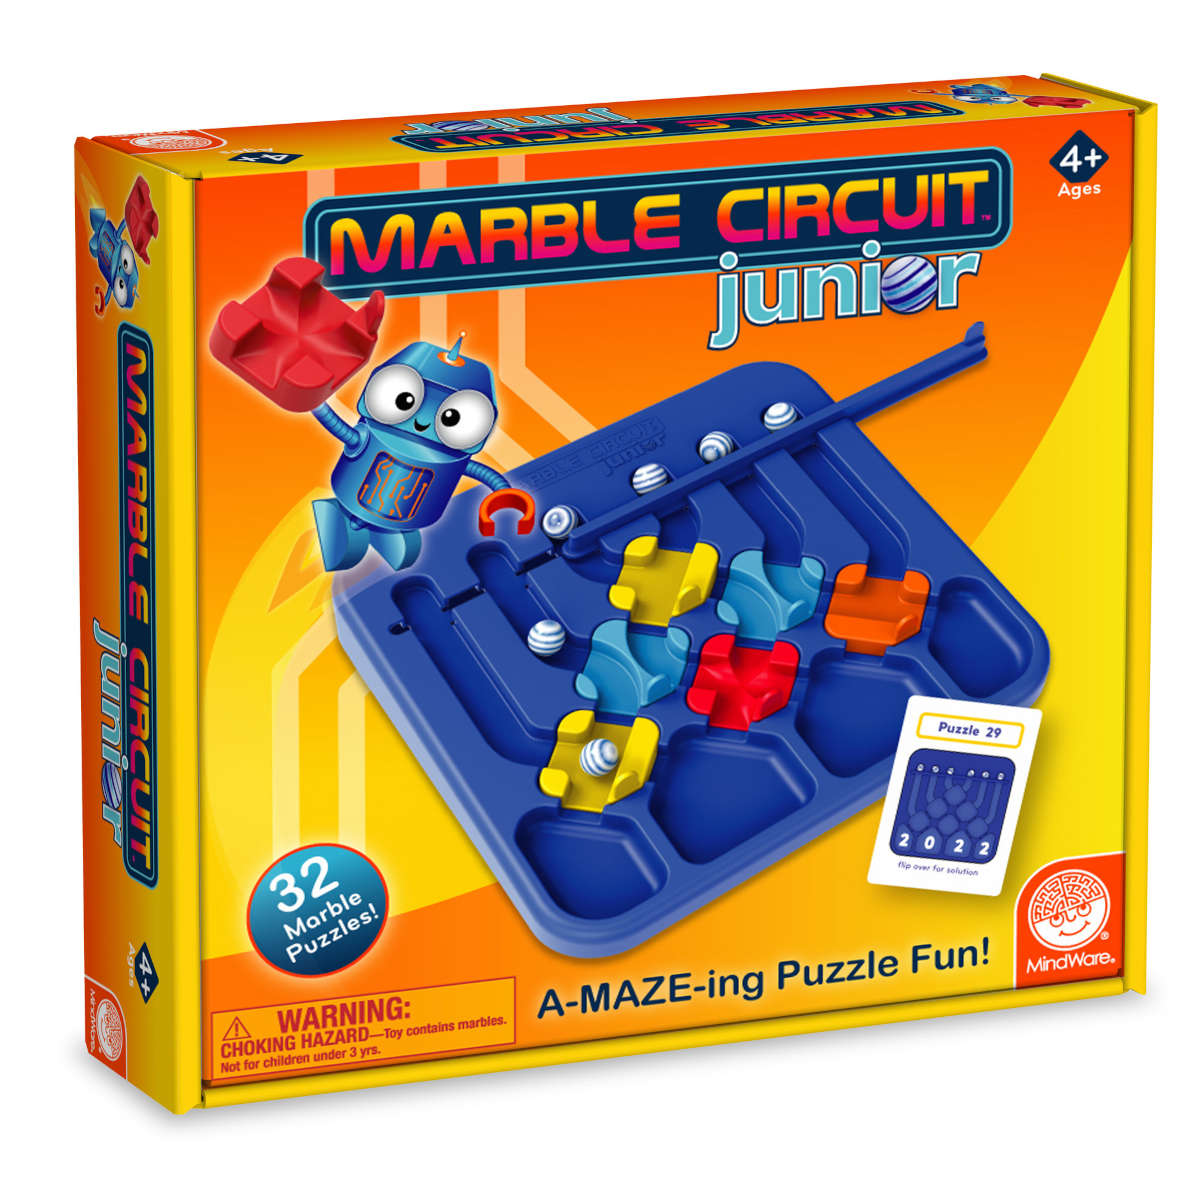 Mindware Marble Circuit Junior